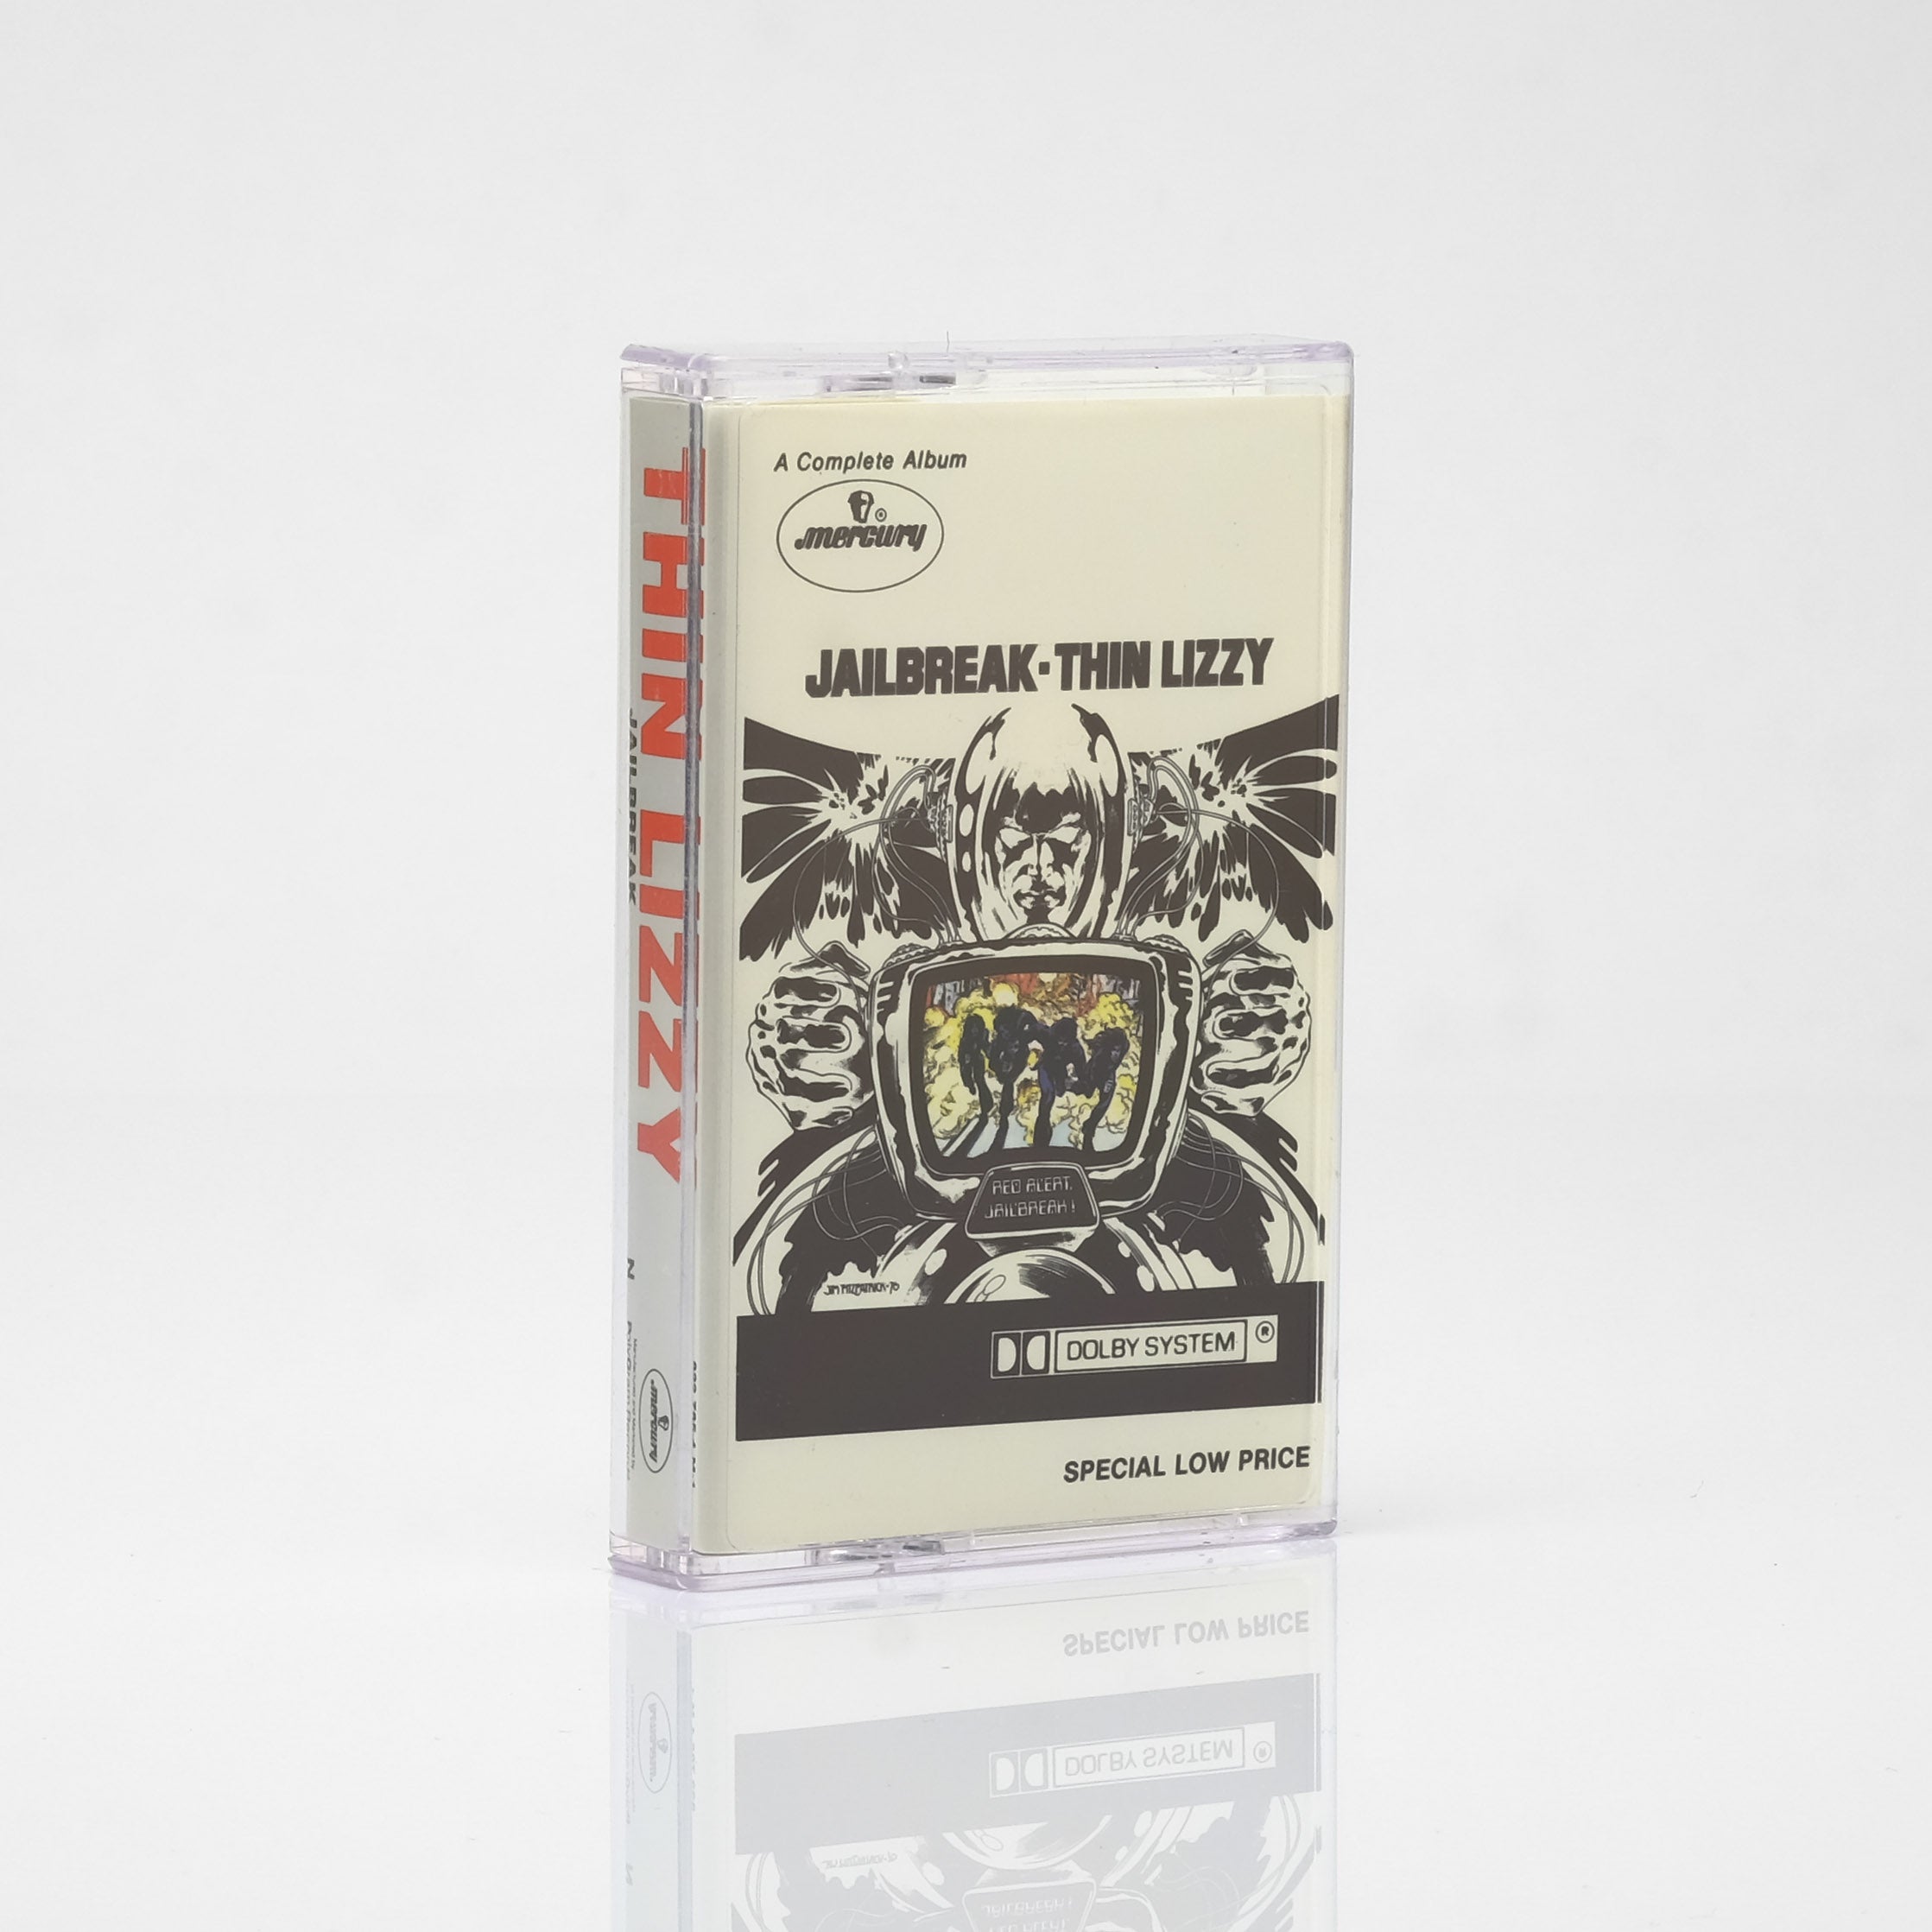 Thin Lizzy - Jailbreak Cassette Tape